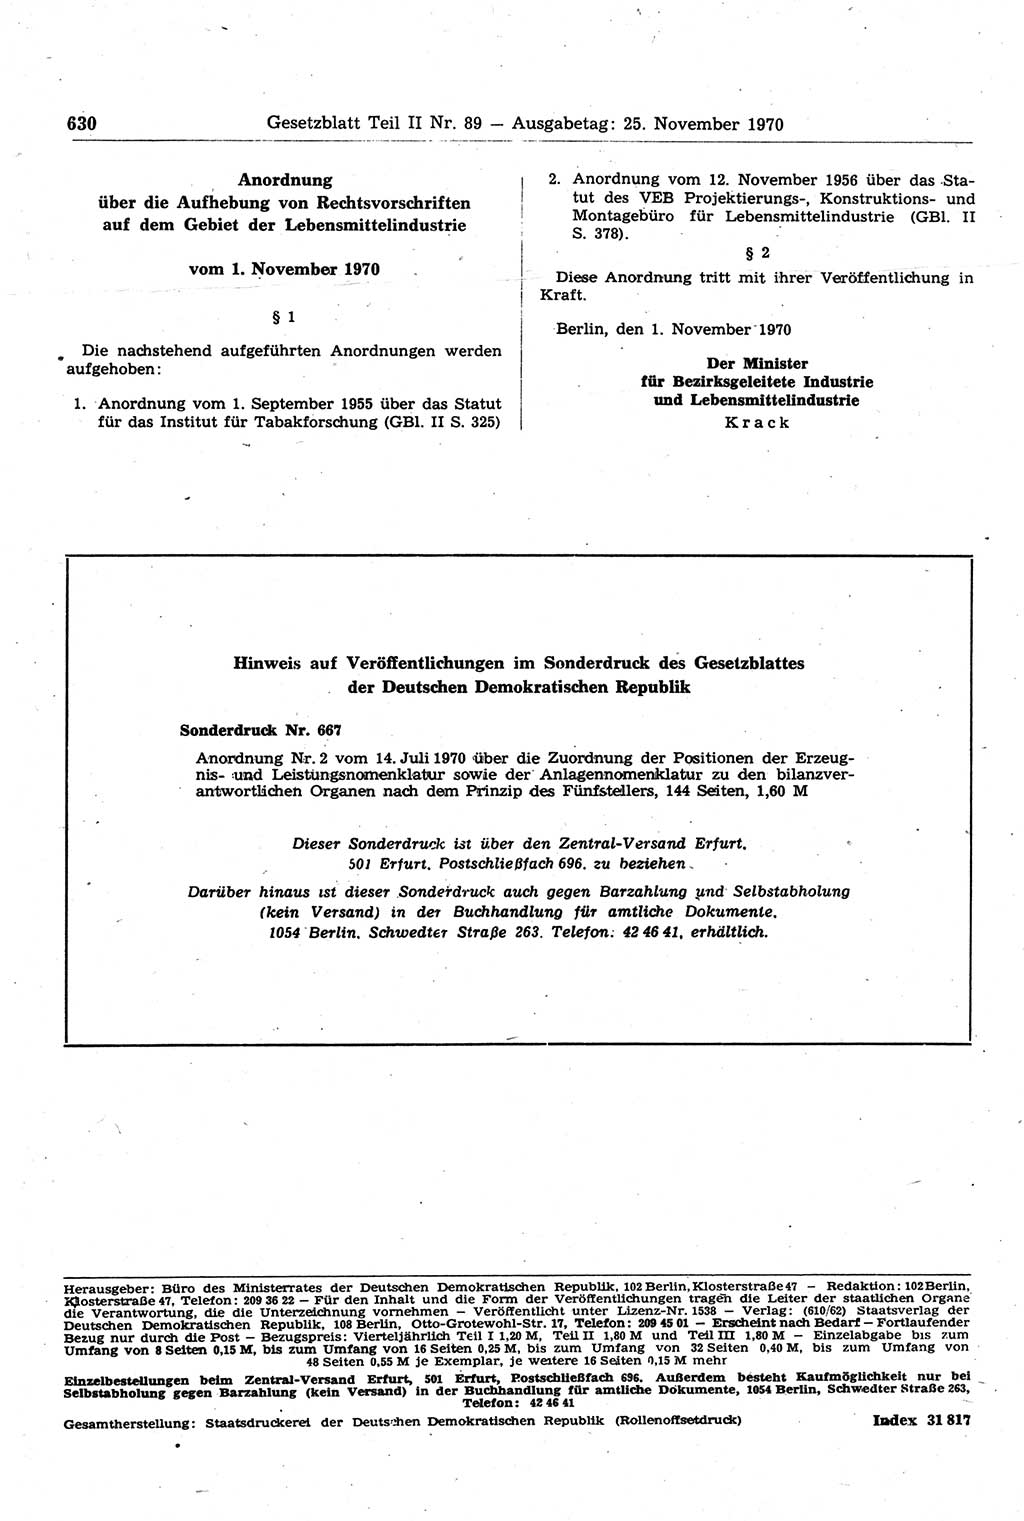 Gesetzblatt (GBl.) der Deutschen Demokratischen Republik (DDR) Teil ⅠⅠ 1970, Seite 630 (GBl. DDR ⅠⅠ 1970, S. 630)